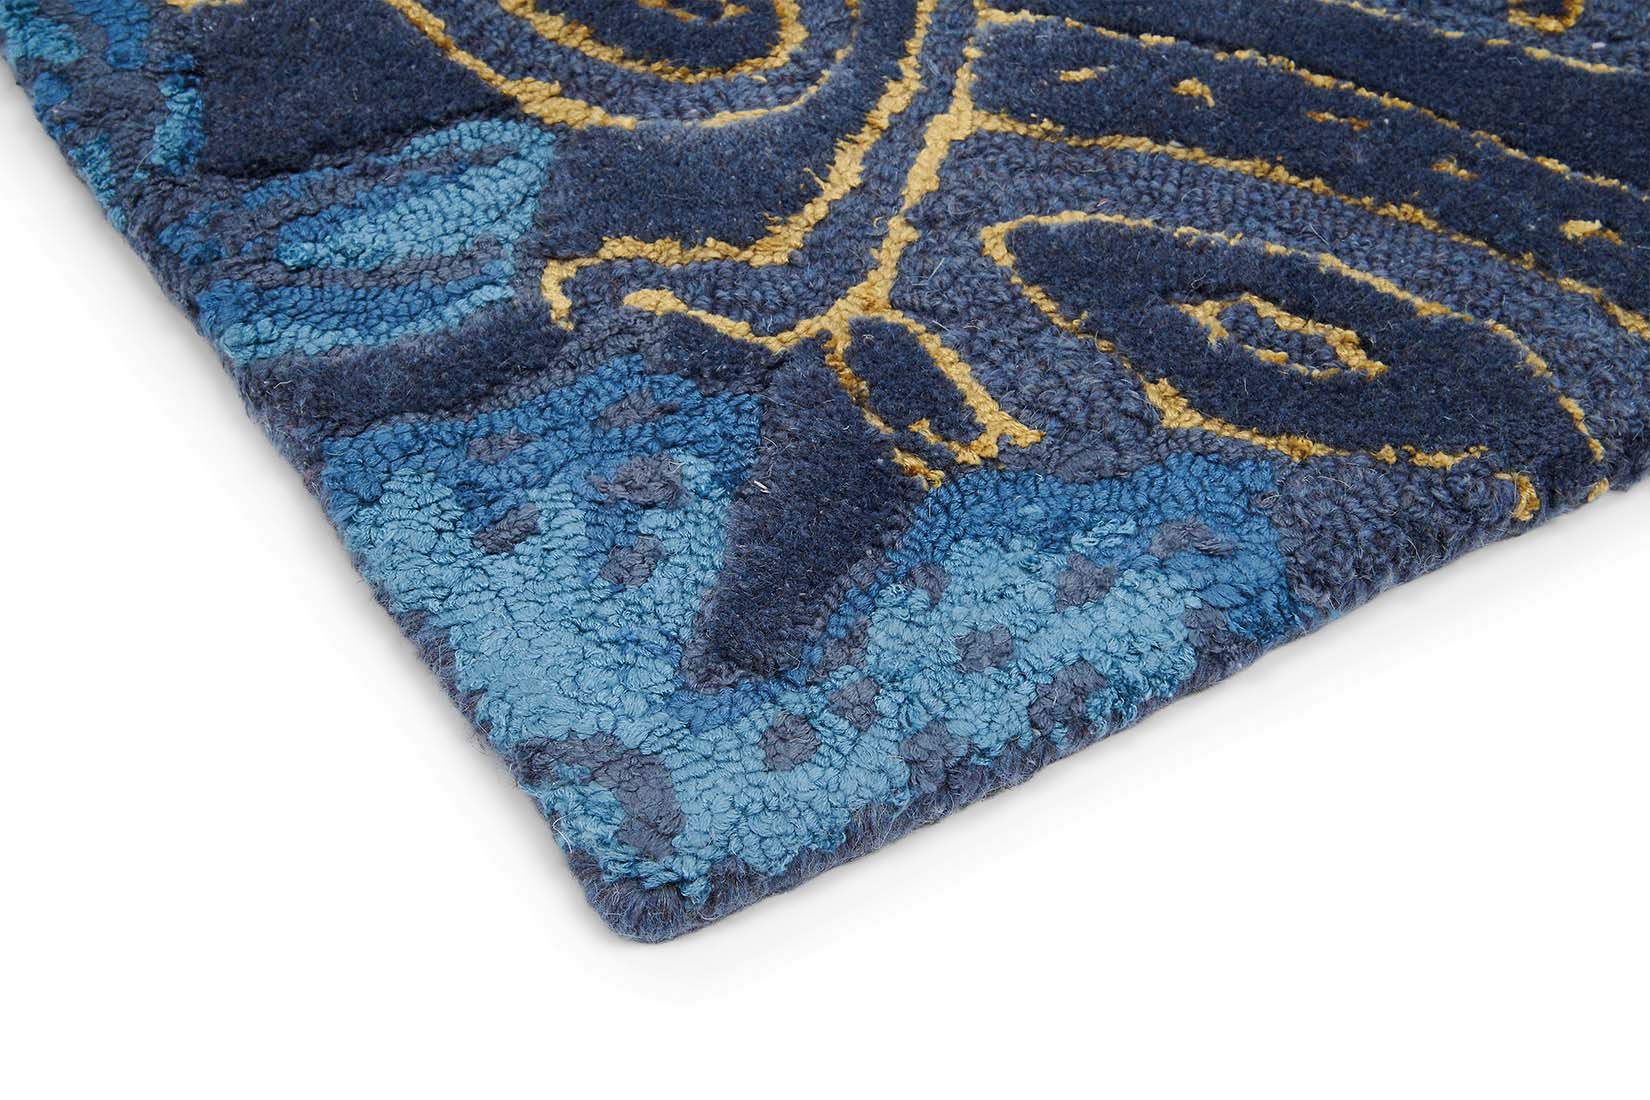 Rectangular navy blue rug with blue floral design